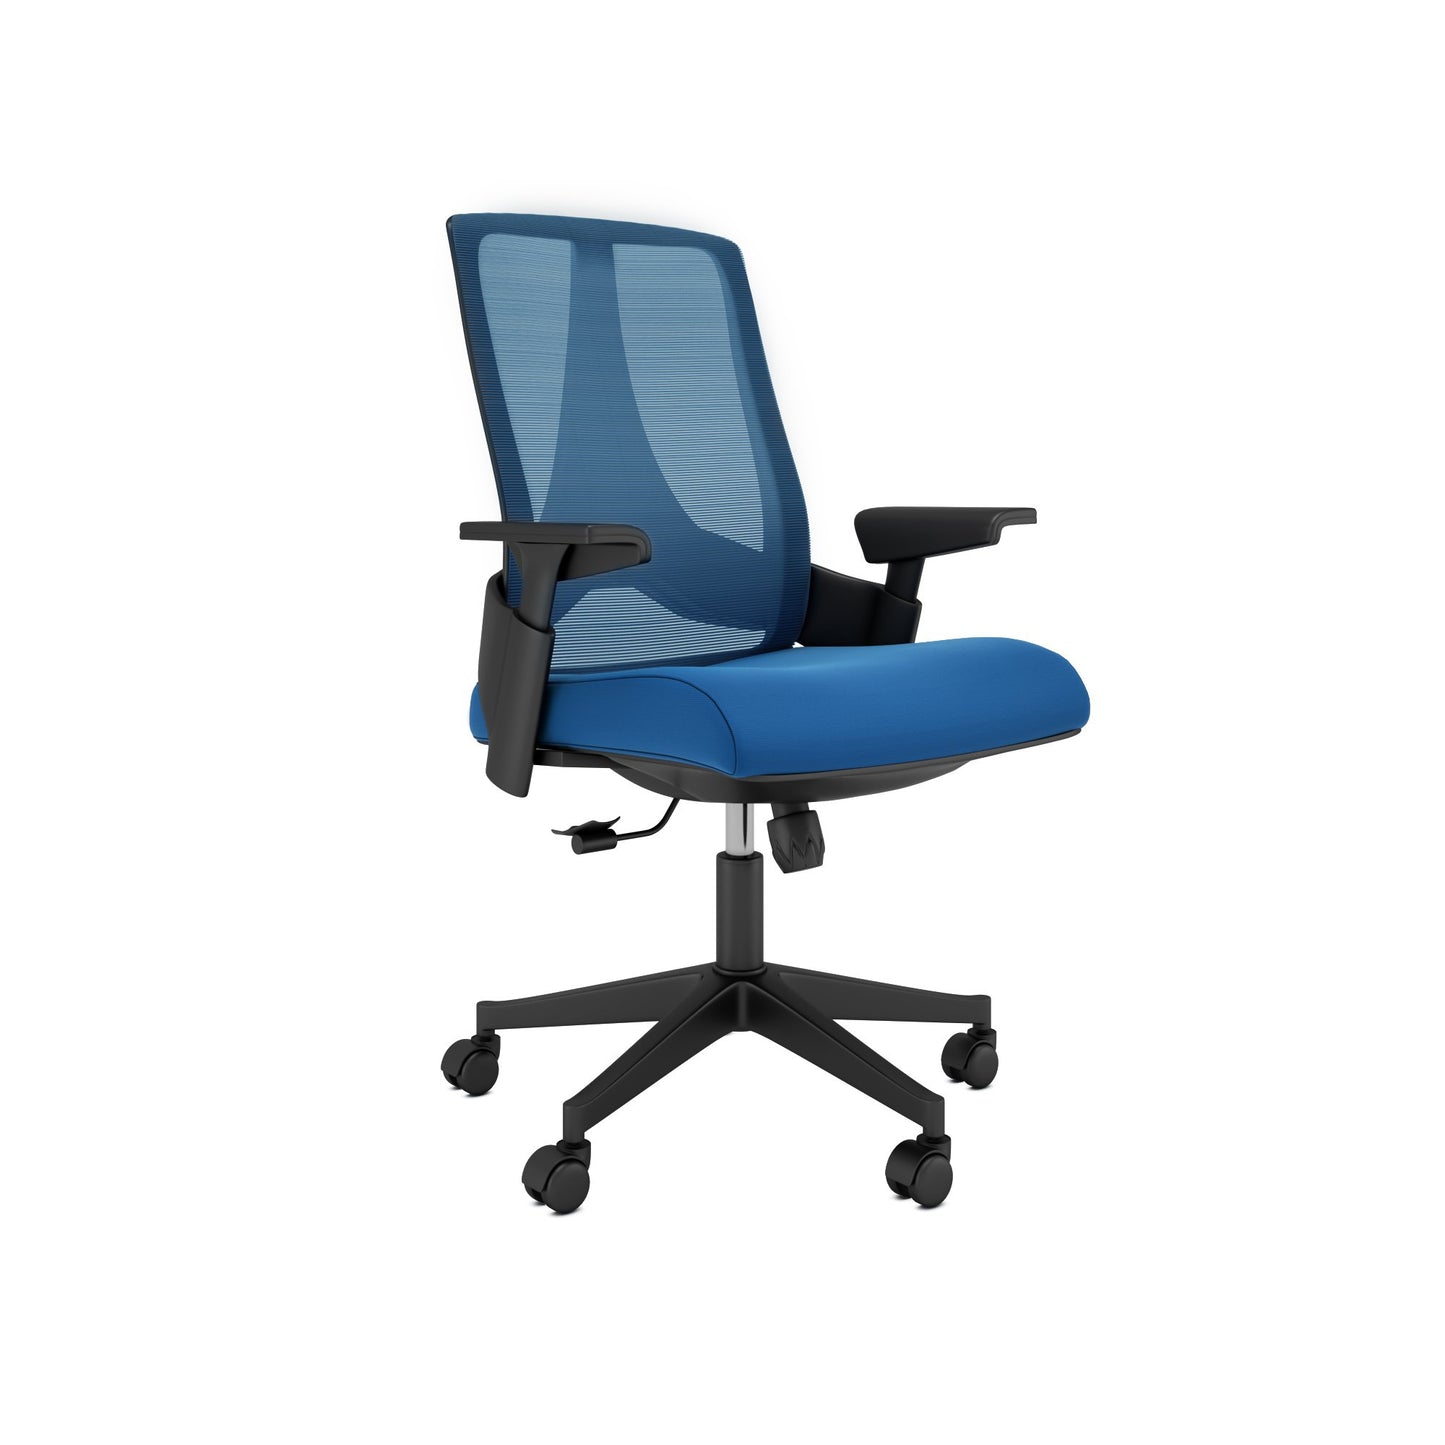 Chaise de bureau Nancy's Seymour - Chaise de bureau - Dossier inclinable - Ergonomique - Maille - Bleu - Noir - 63 x 69 x 102-112 cm